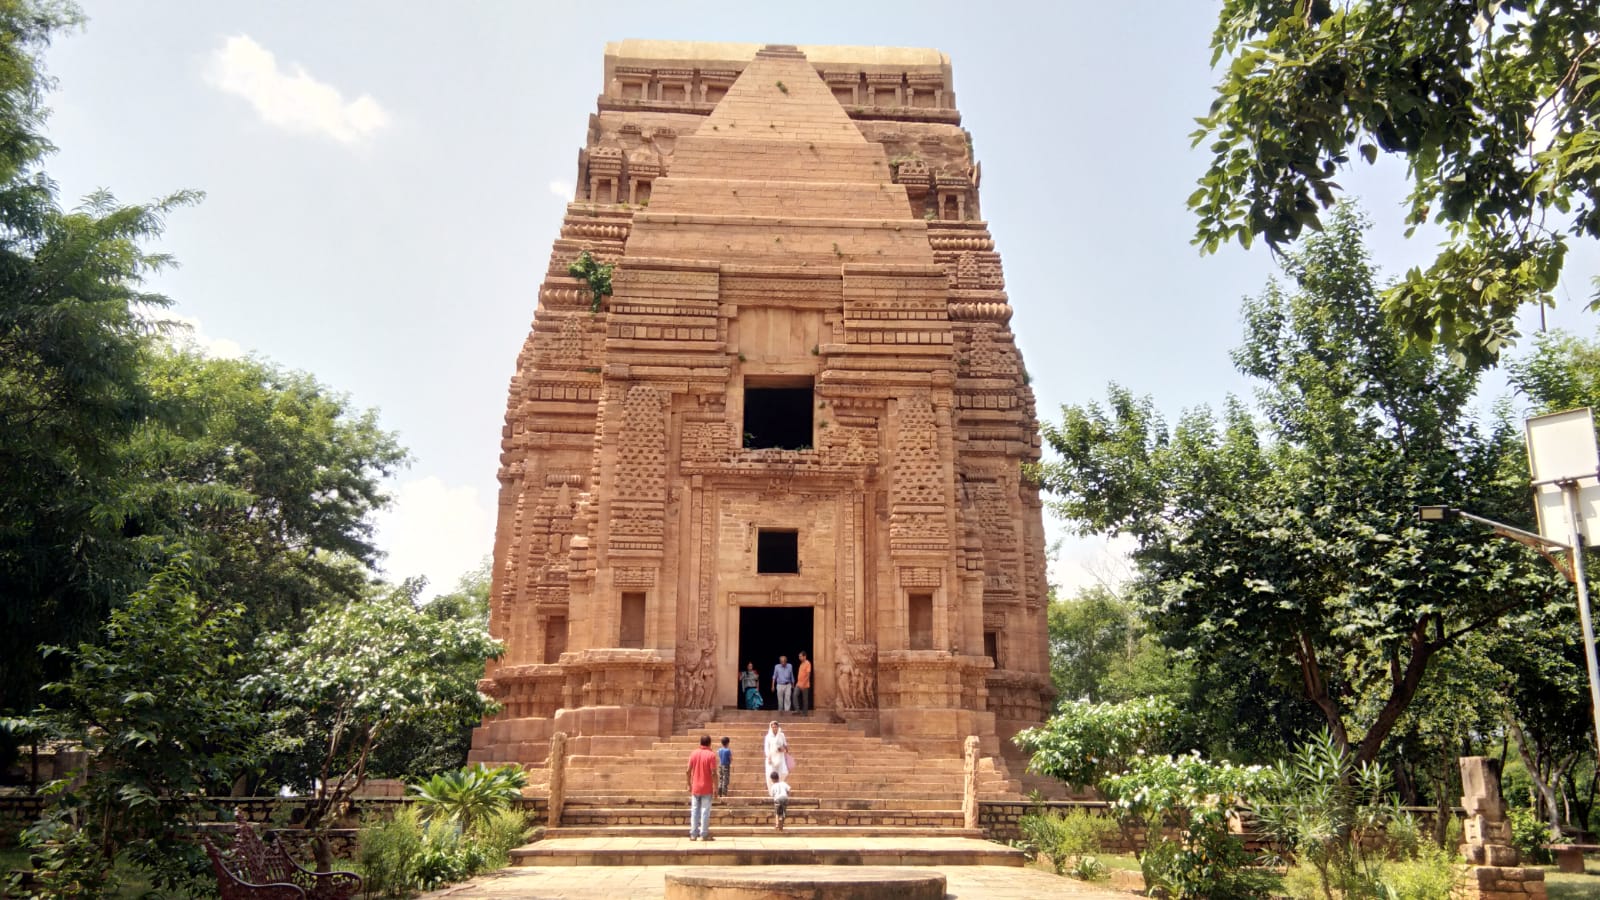   उत्तर और दक्षिण शैली में स्थापित किया गया यह मंदिर ग्वालियर में दुर्ग पर स्थित है. यह ग्वालियर दुर्ग की सबसे ऊंची इमारतों में से एक है जिस पर विशालकाय बड़े-बड़े खम्बों पर विशाल पत्थर को स्थापित किया गया है, जो कि वास्तुकला का अनूठा उदाहरण है.